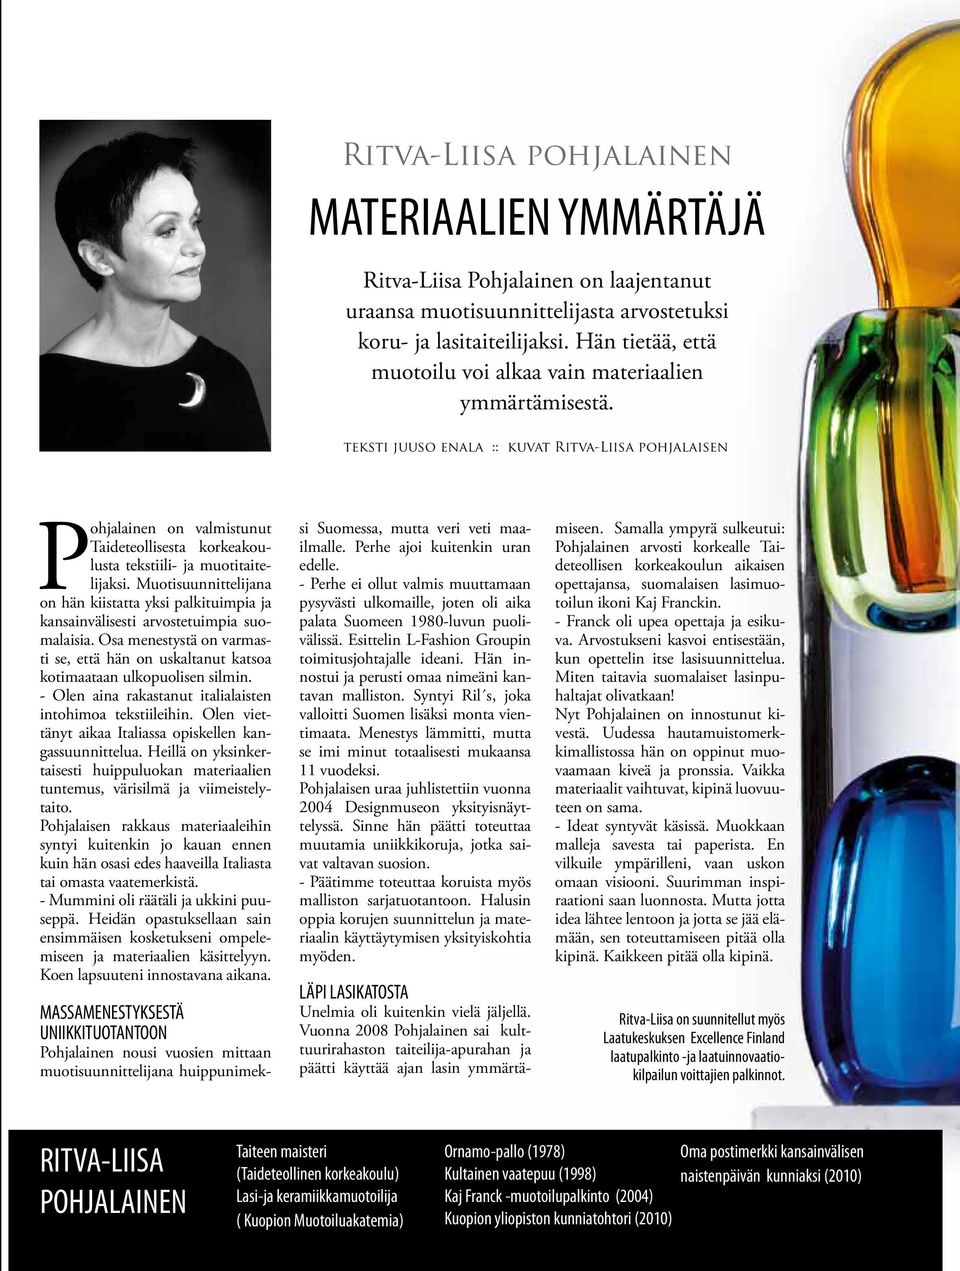 teksti juuso enala :: kuvat Ritva-Liisa pohjalaisen Pohjalainen on valmistunut Taideteollisesta korkeakoulusta tekstiili- ja muotitaitelijaksi.